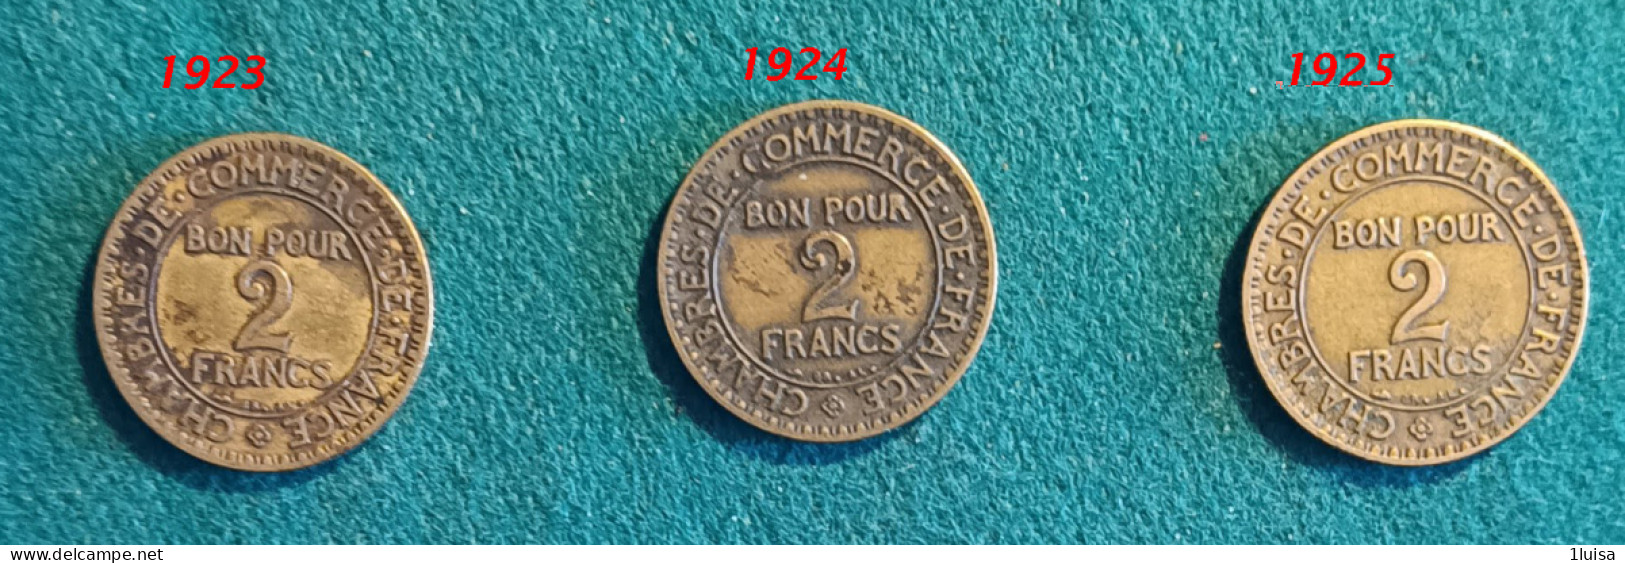 FRANCIA 2 Francs 3  Monete Anni Diversi - 2 Francs